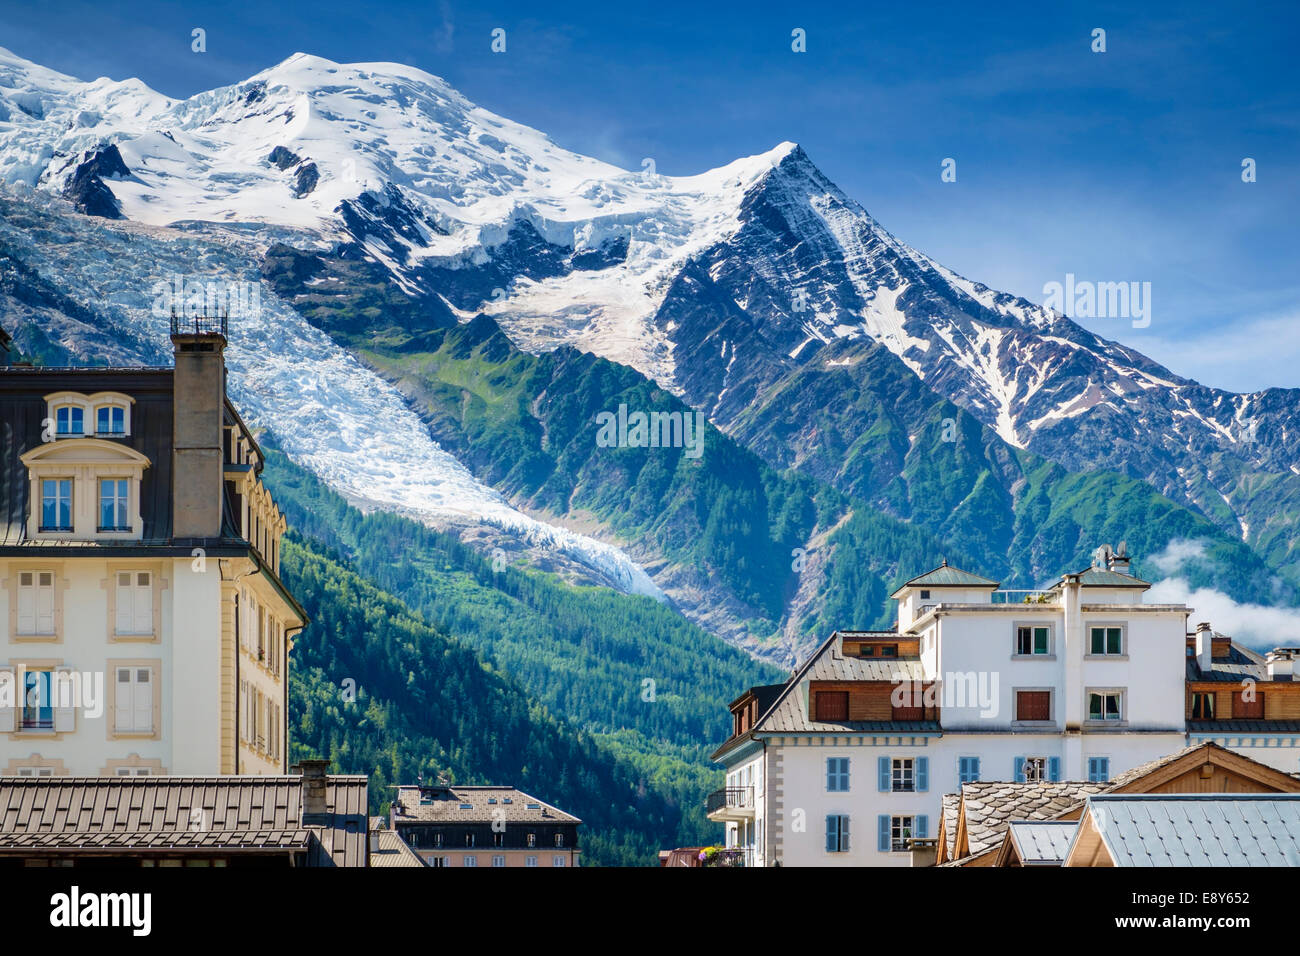 Chamonix, Französische Alpen im Sommer, Frankreich - Glacier des Bossons und Mont Blanc Gipfel über den Dächern Stockfoto